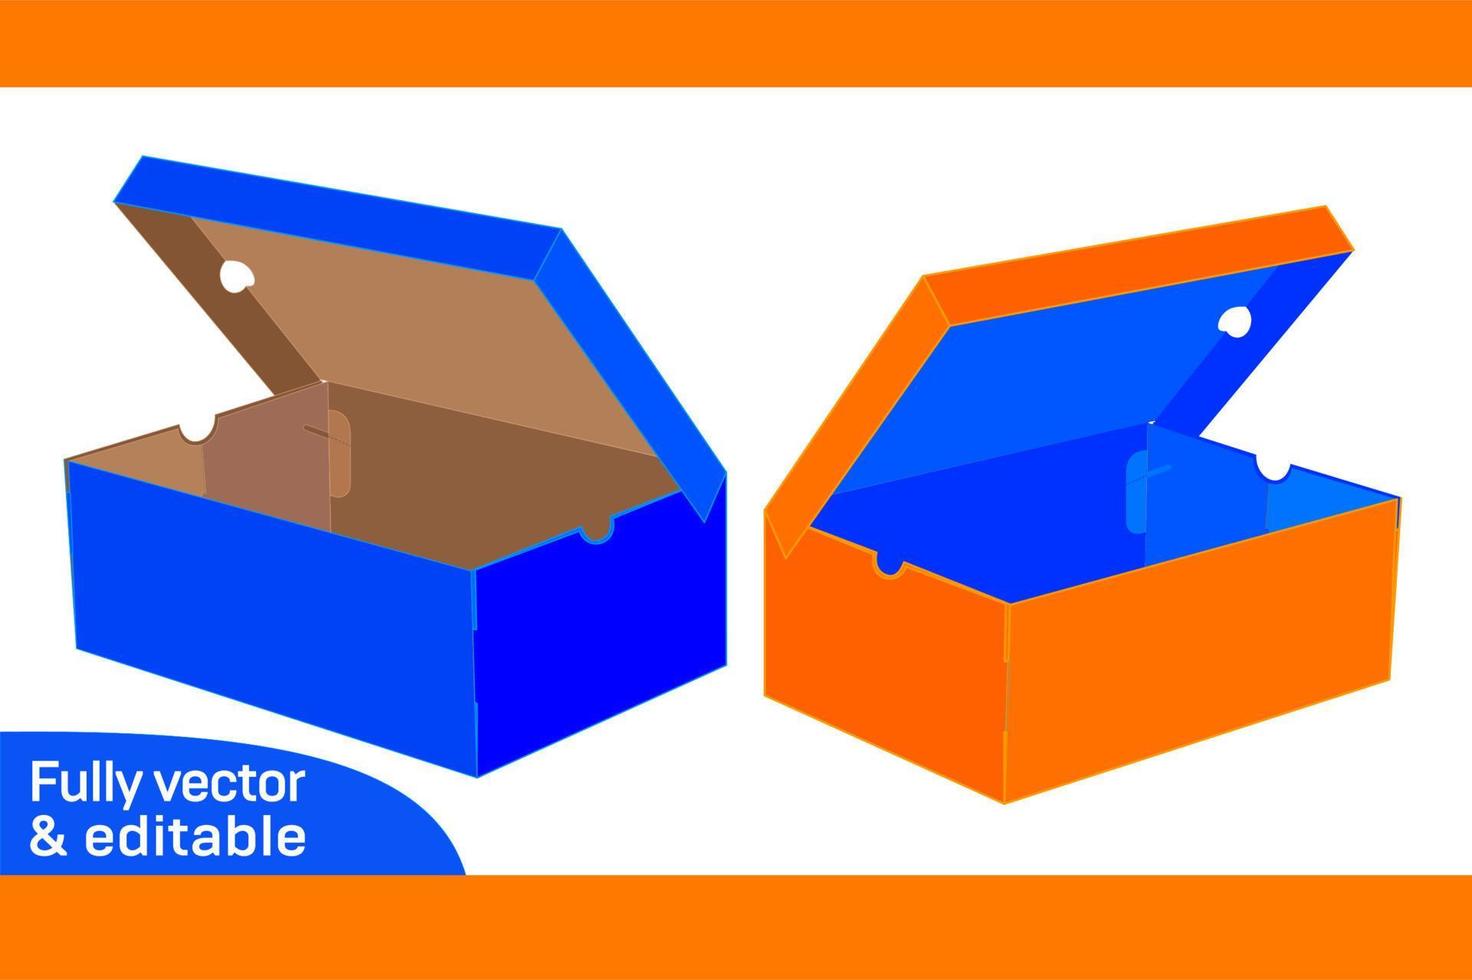 schoen luxe doos zonder ieder lijm opvouwbaar doos dieline sjabloon en 3d doos ontwerp 3d doos vector